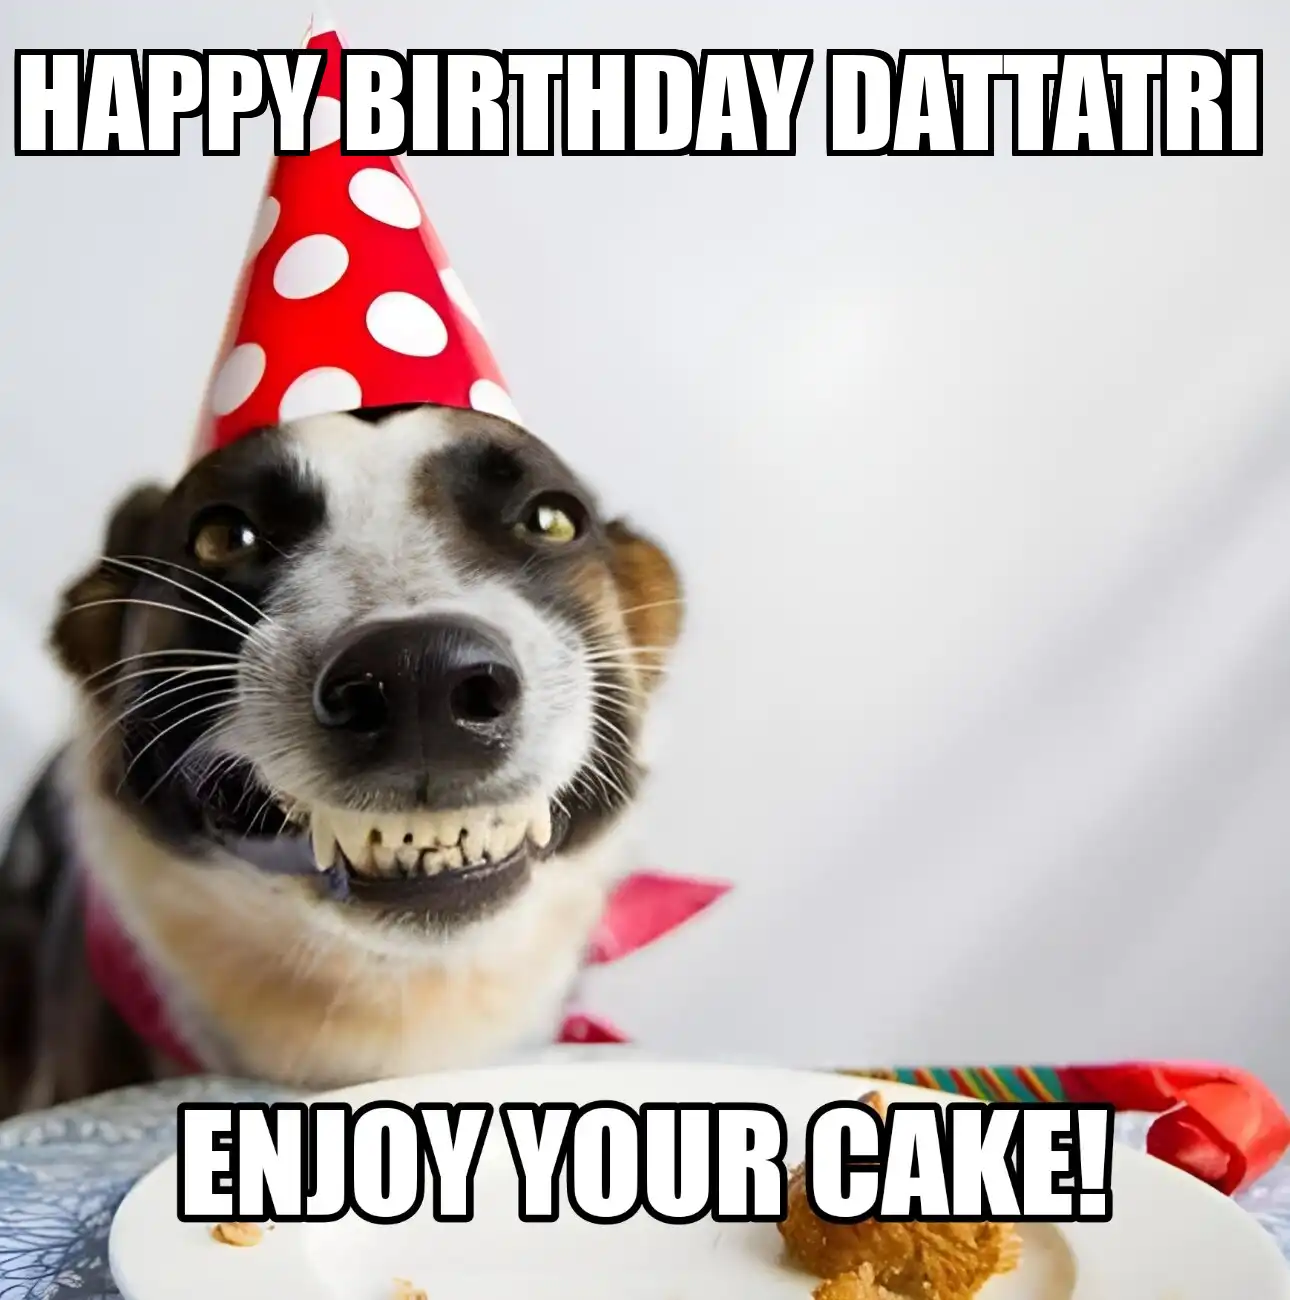 Happy Birthday Dattatri Enjoy Your Cake Dog Meme